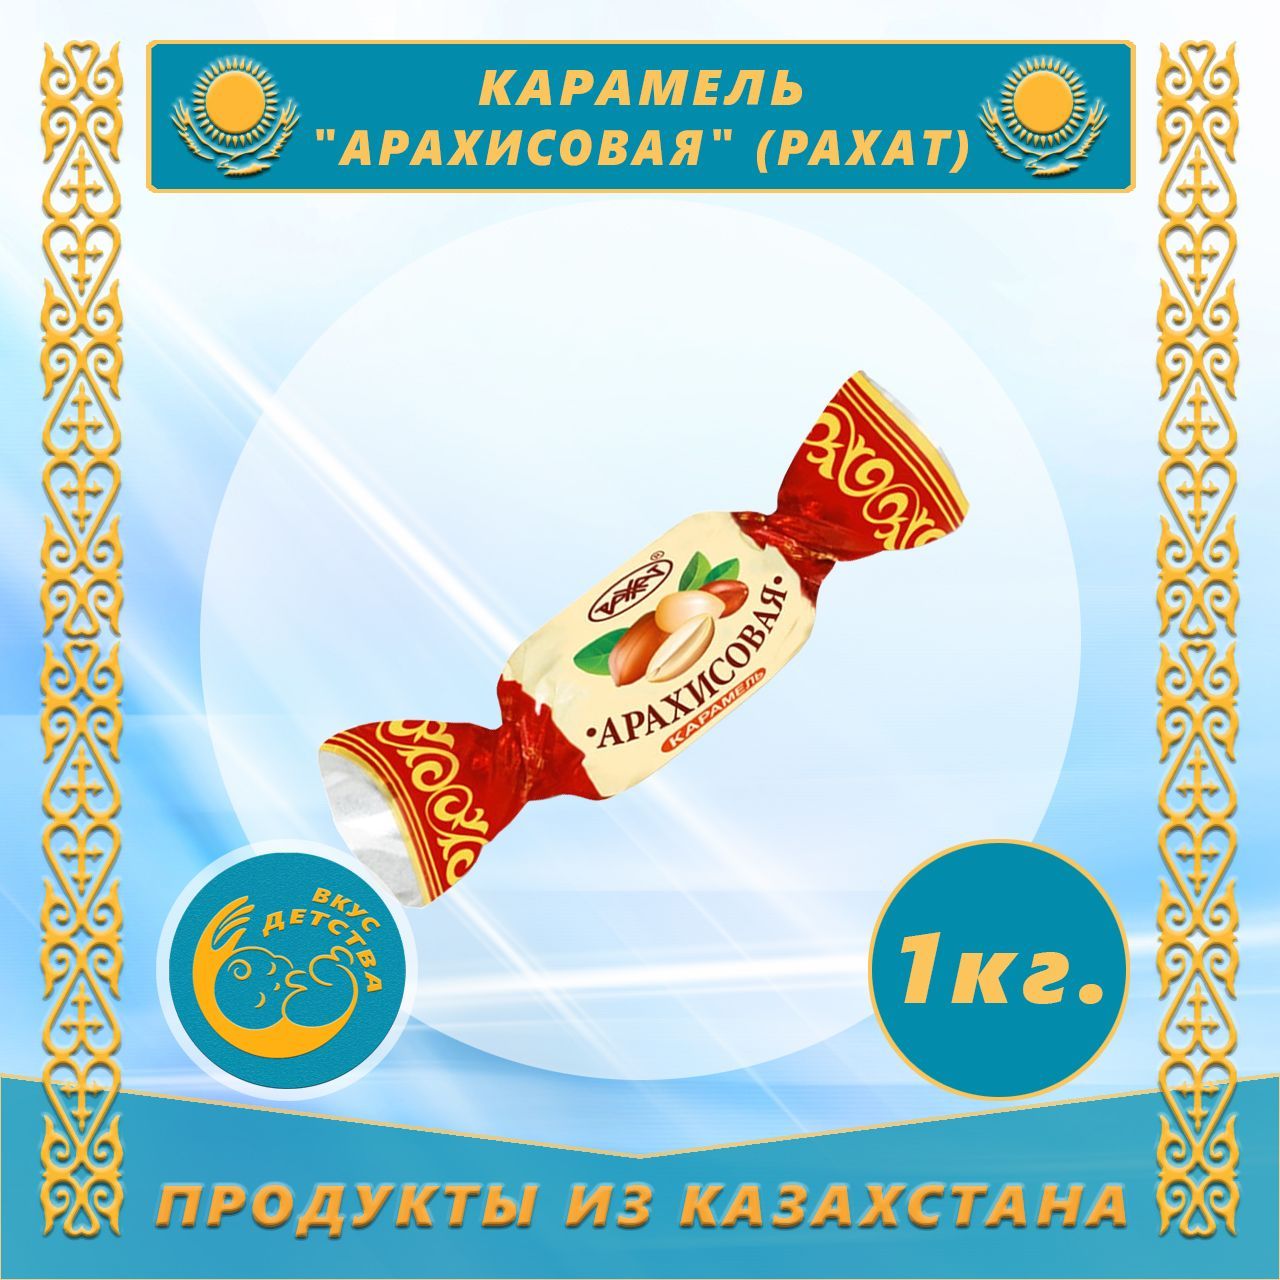 Сладости казахстана